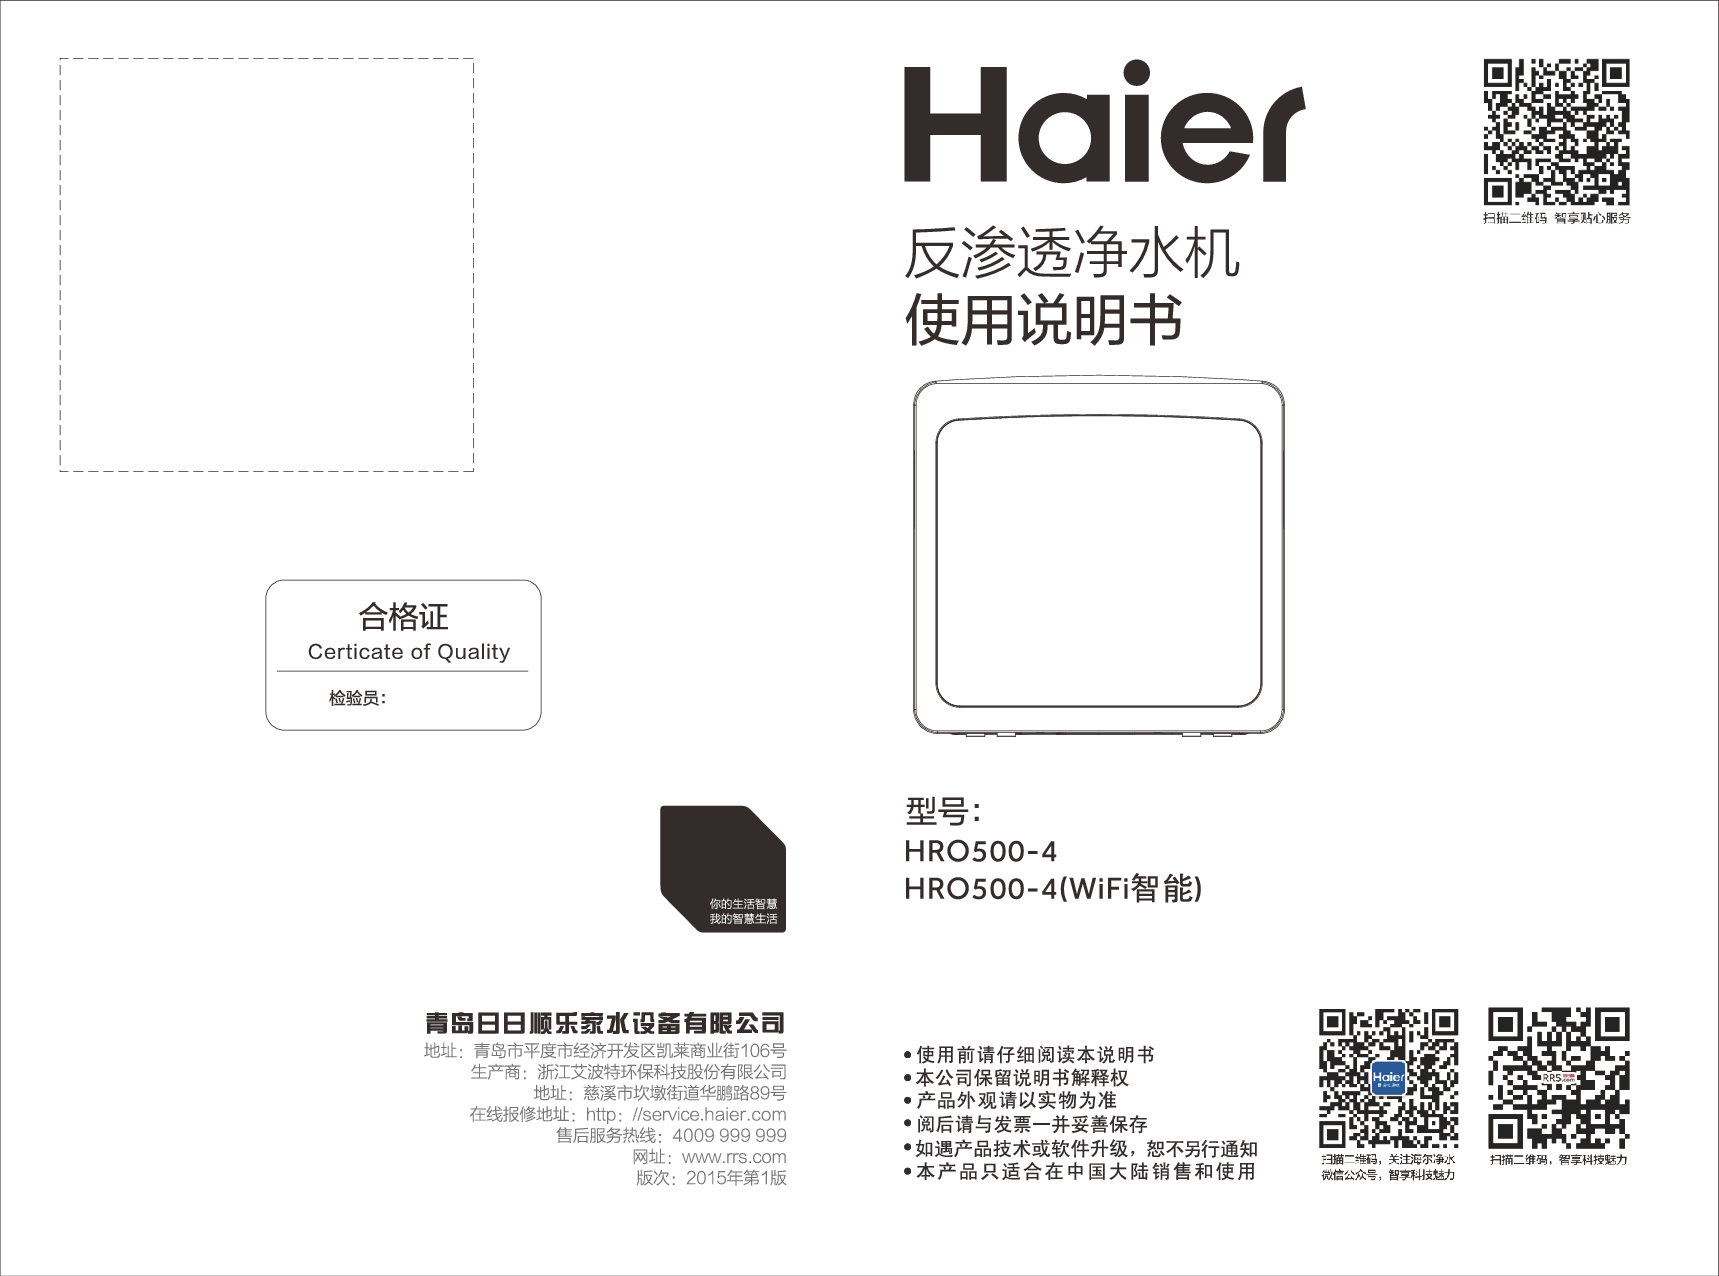 海尔 Haier HRO500-4 使用说明书 封面